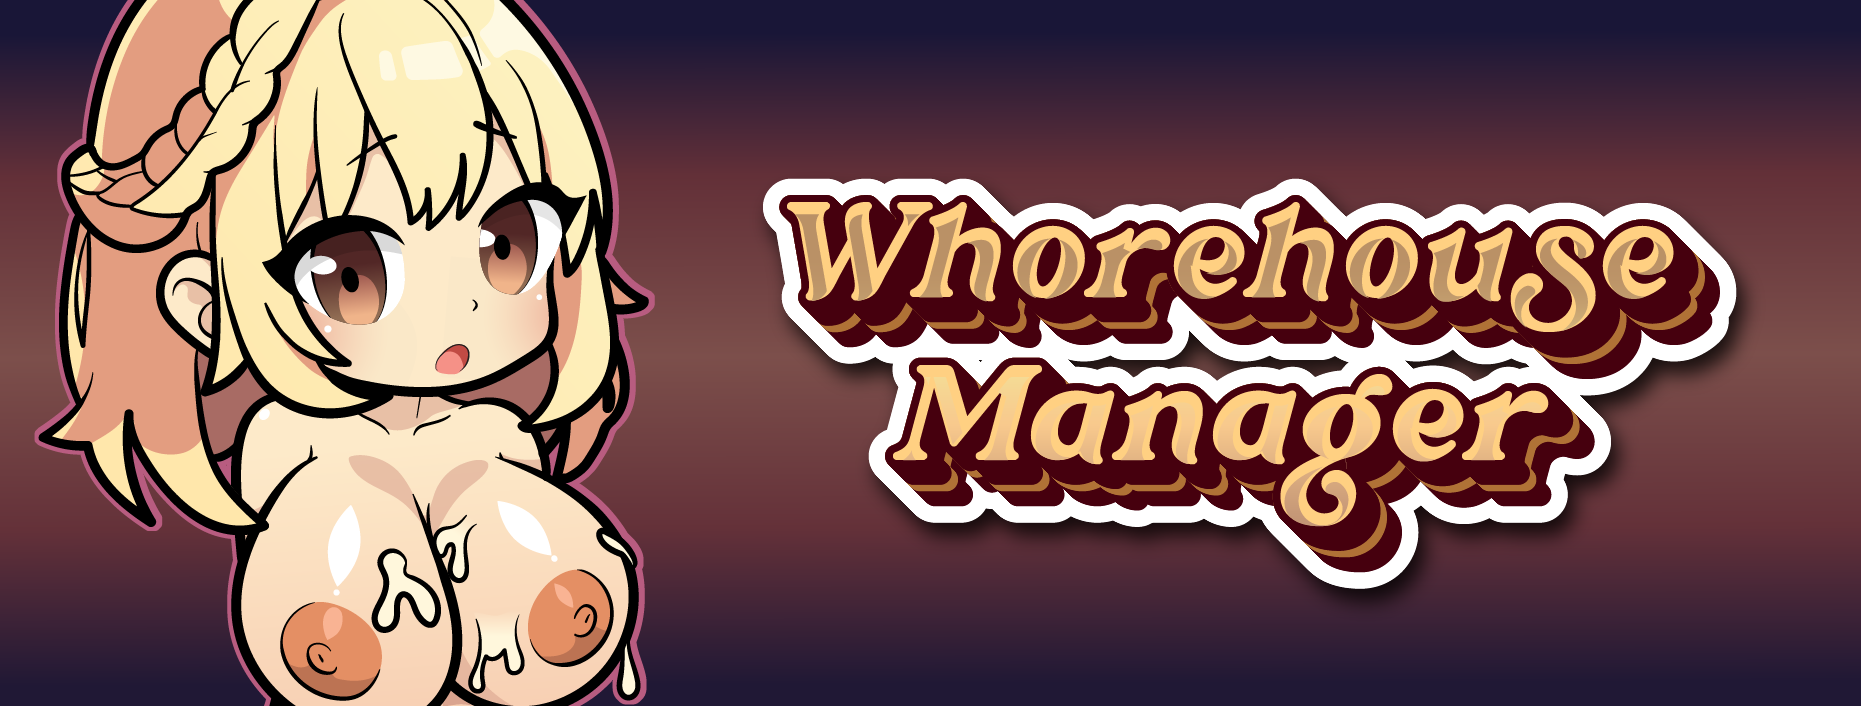 Whorehouse Manager